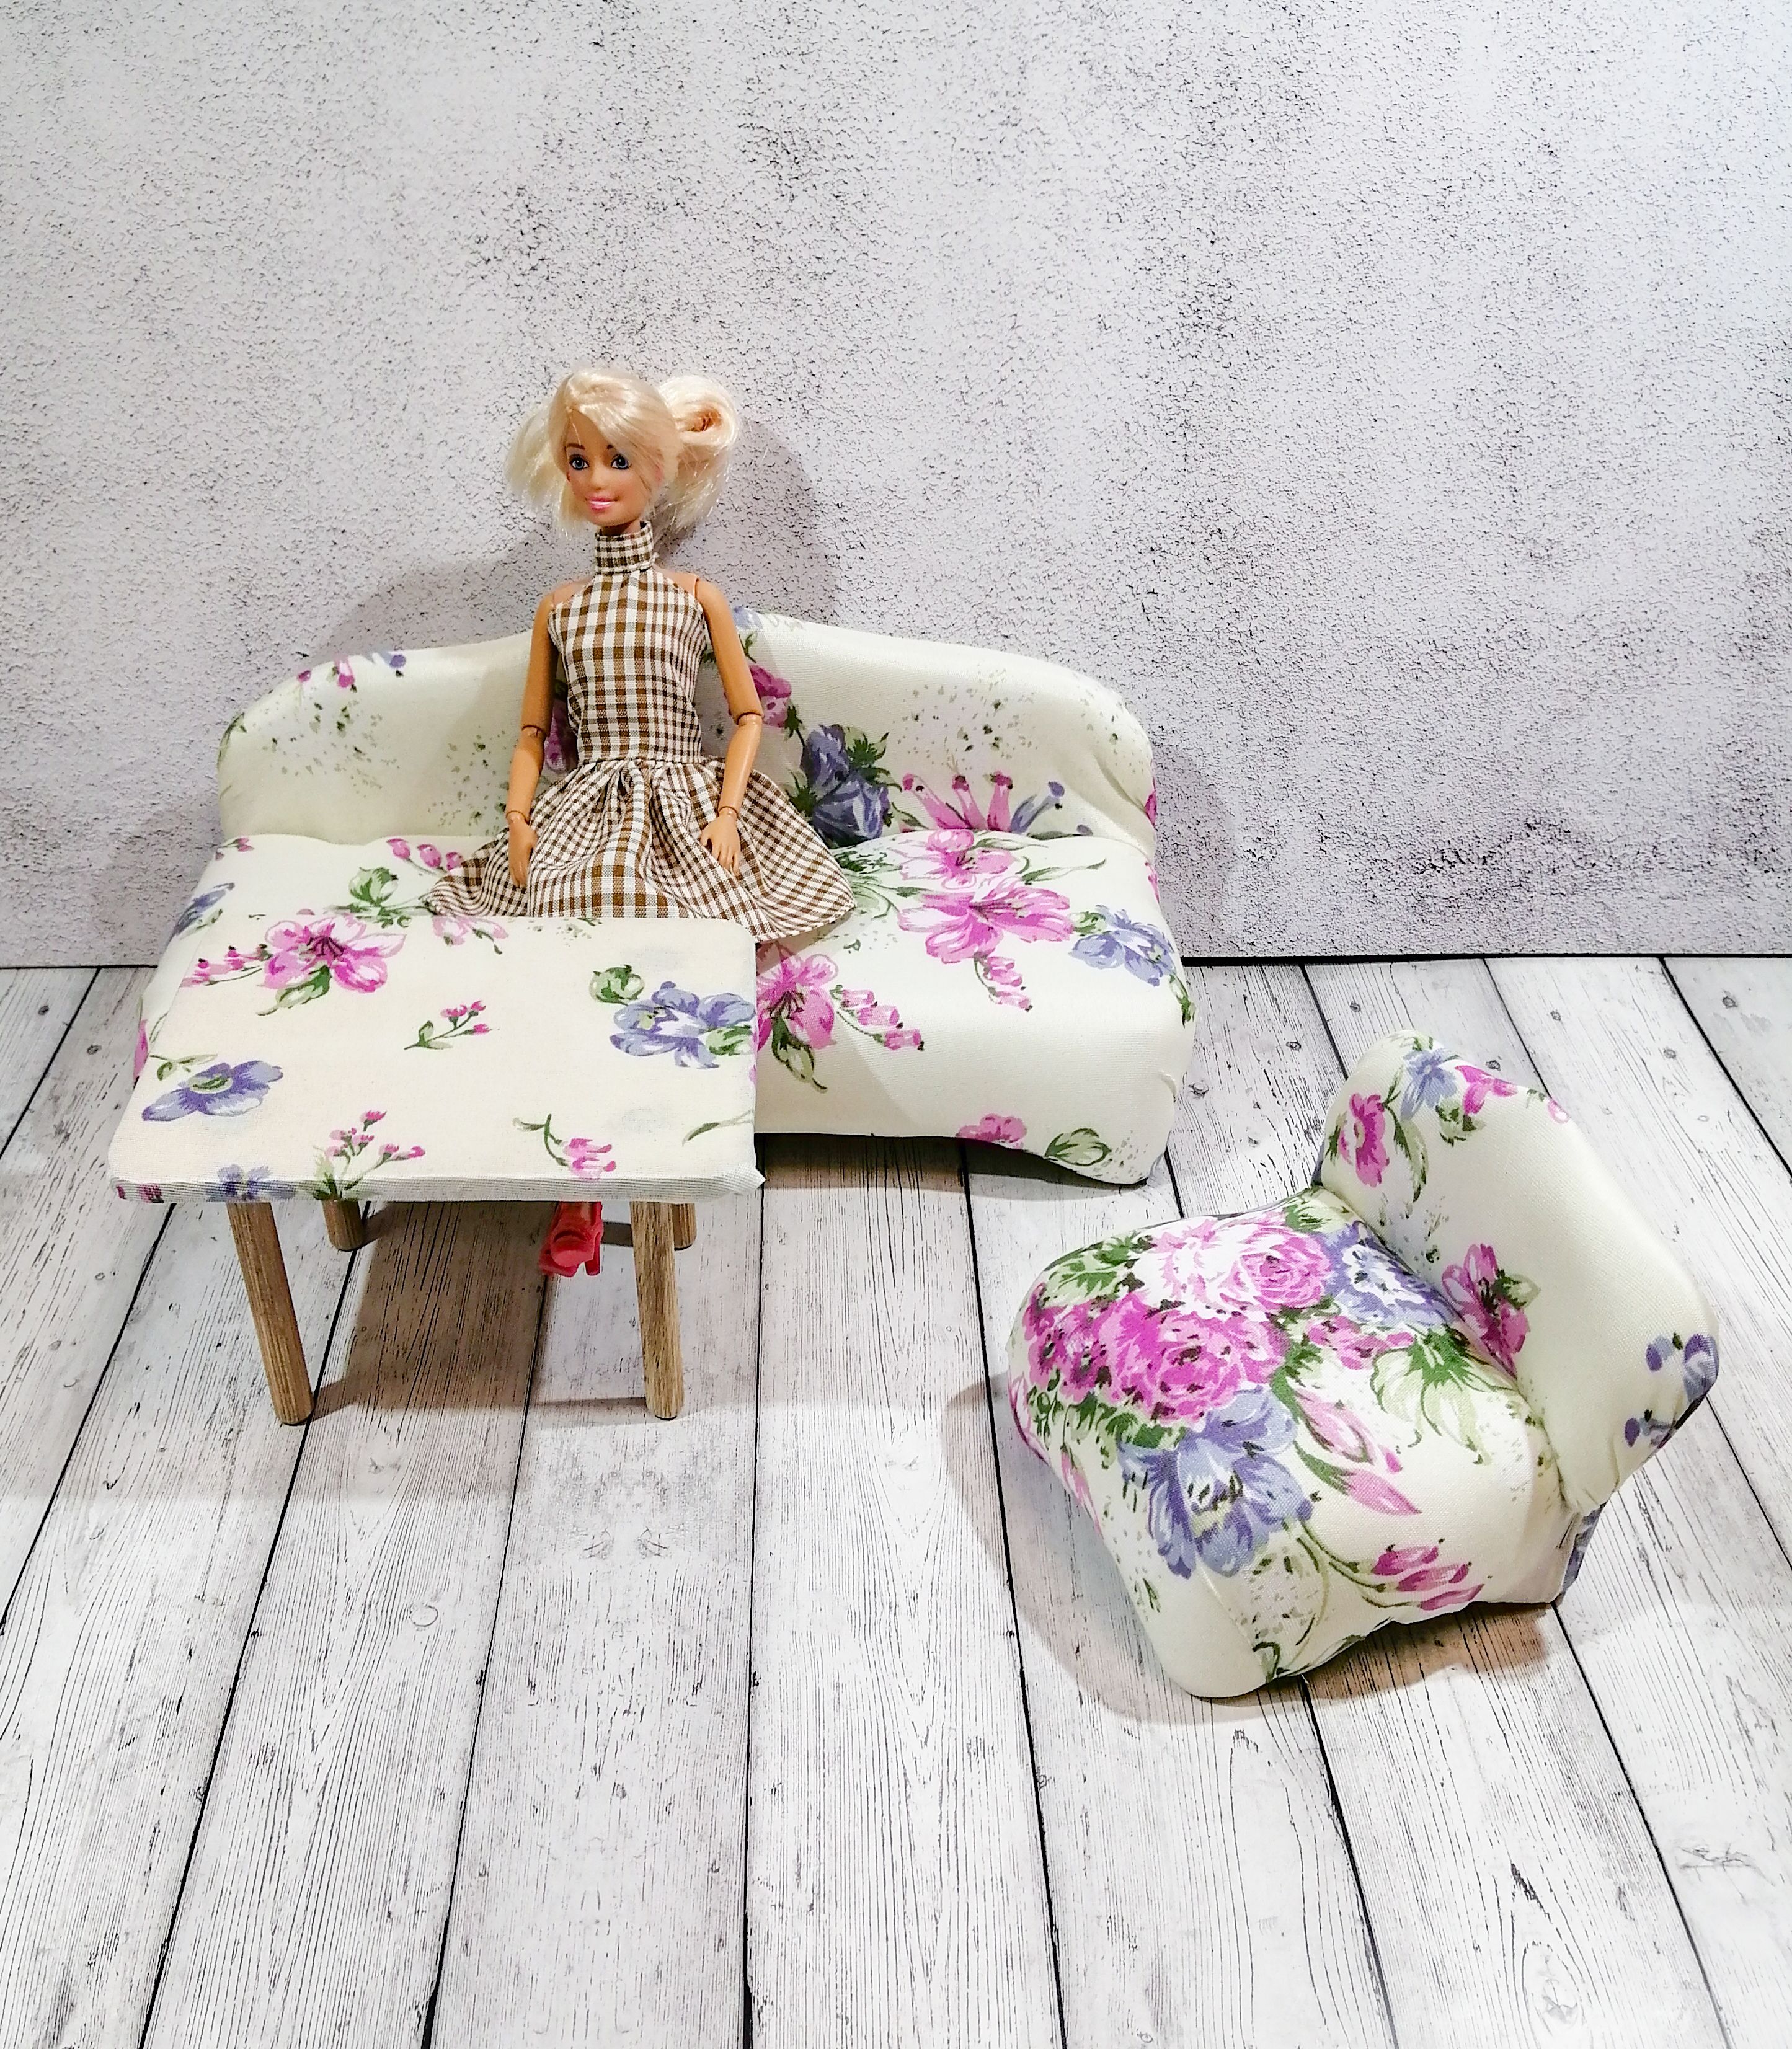 Мебель для кукол от 2 руб. купить в Москве - Интернет-магазин Всё Малышам